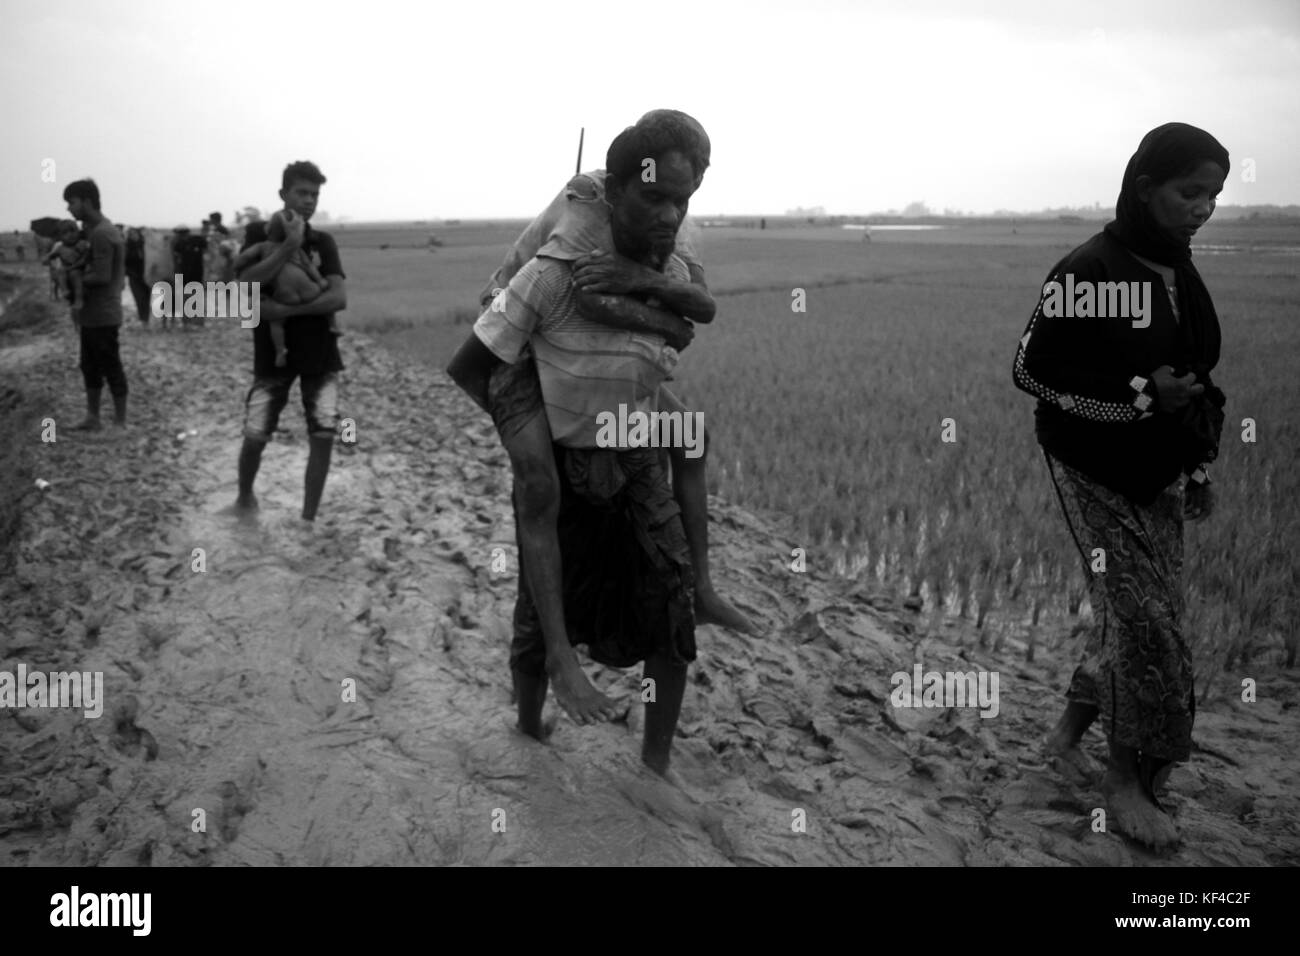 Bangladesh : les réfugiés Rohingya fuyant l'opération militaire dans l'État de Rakhine au Myanmar, a conclu le Bangladesh d'un territoire à se réfugier dans des Cox's Bazar (Bangladesh) le 3 septembre 2017. Plus d'un demi-million de réfugiés Rohingyas de l'État de Rakhine au Myanmar, ont traverse au Bangladesh depuis août 25, 2017 D'après l'ONU. La dernière campagne de l'armée du Myanmar contre les Rohingyas ont débuté après l'attaque sur plusieurs postes de police dans l'État de Rakhine. © Asad Rehman/Alamy Stock Photo Banque D'Images